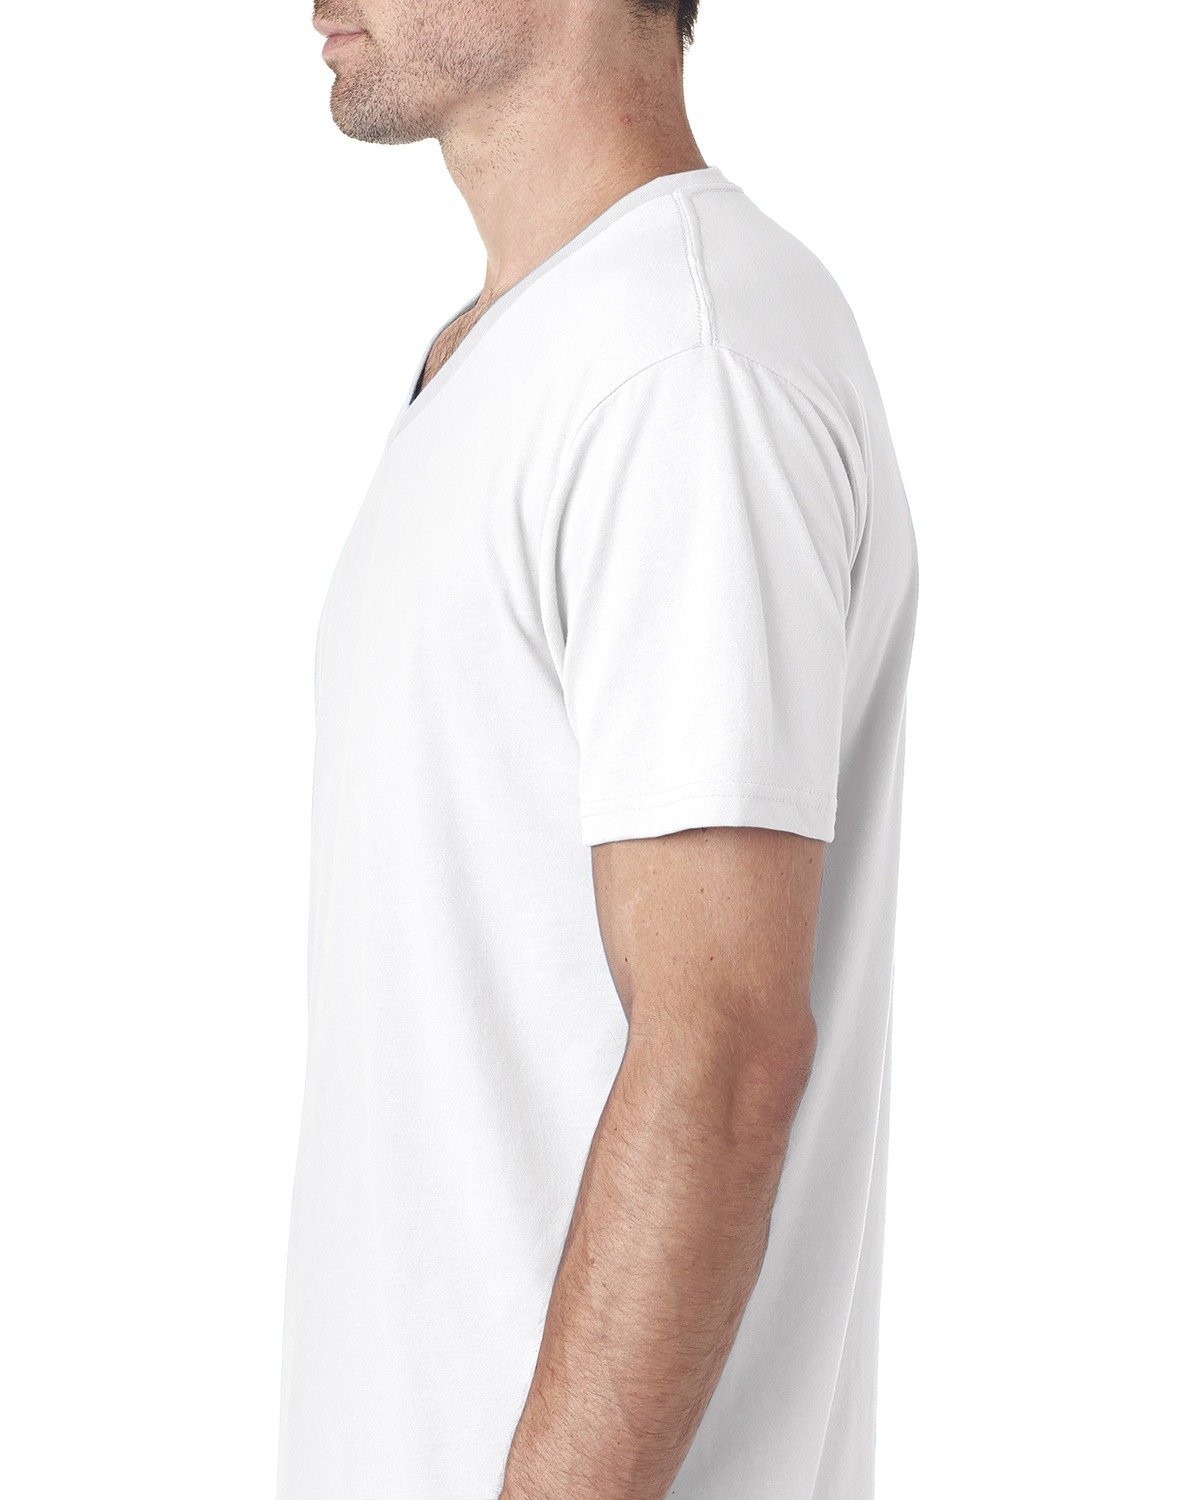 Next Level Men's Sueded Baby Rib Soft V-Neck T-Shirt, White, Medium